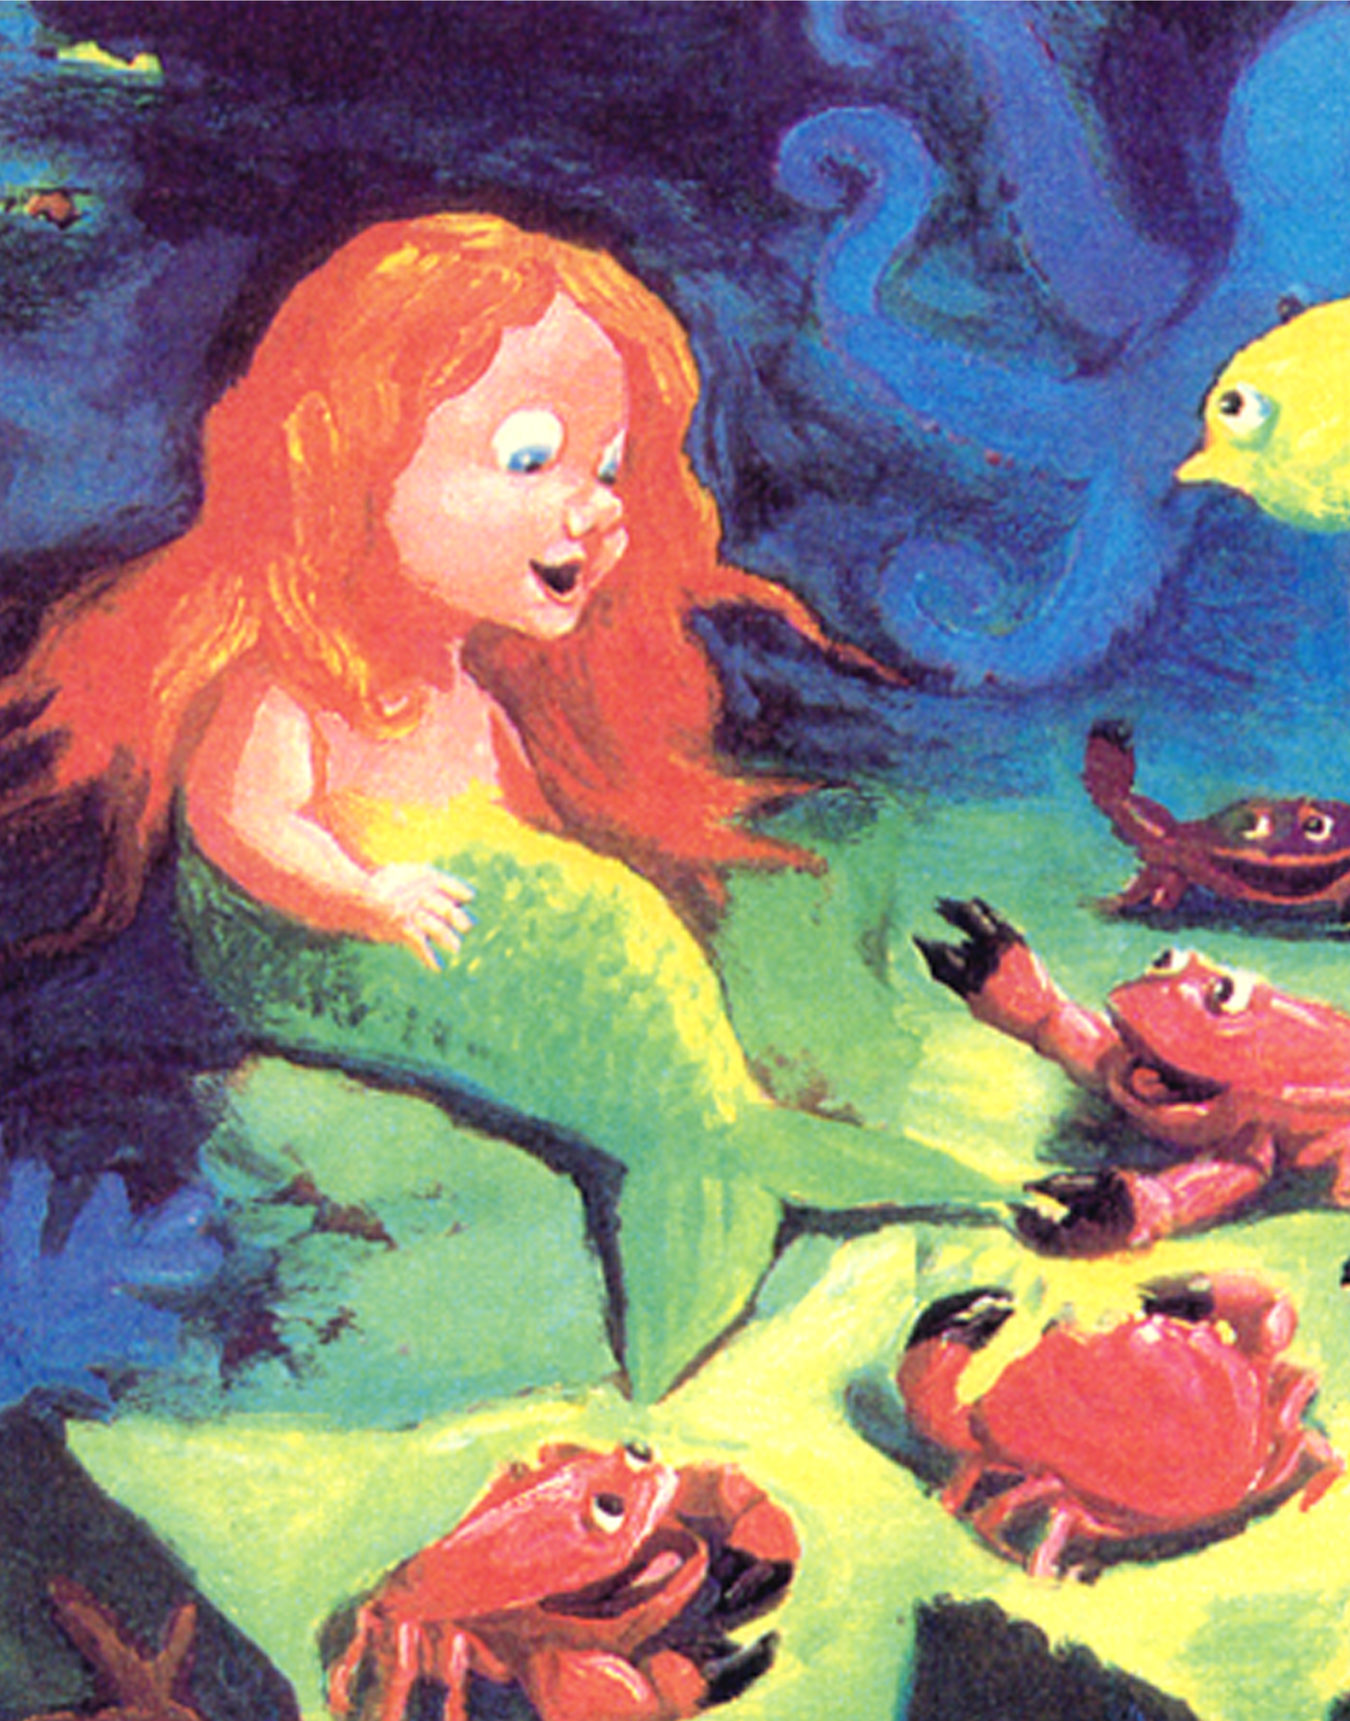 Illustration du spectacle d'histoires de la mer montrant une sirène sous l'eau entourée d'animaux marins, de poissons et de crabes